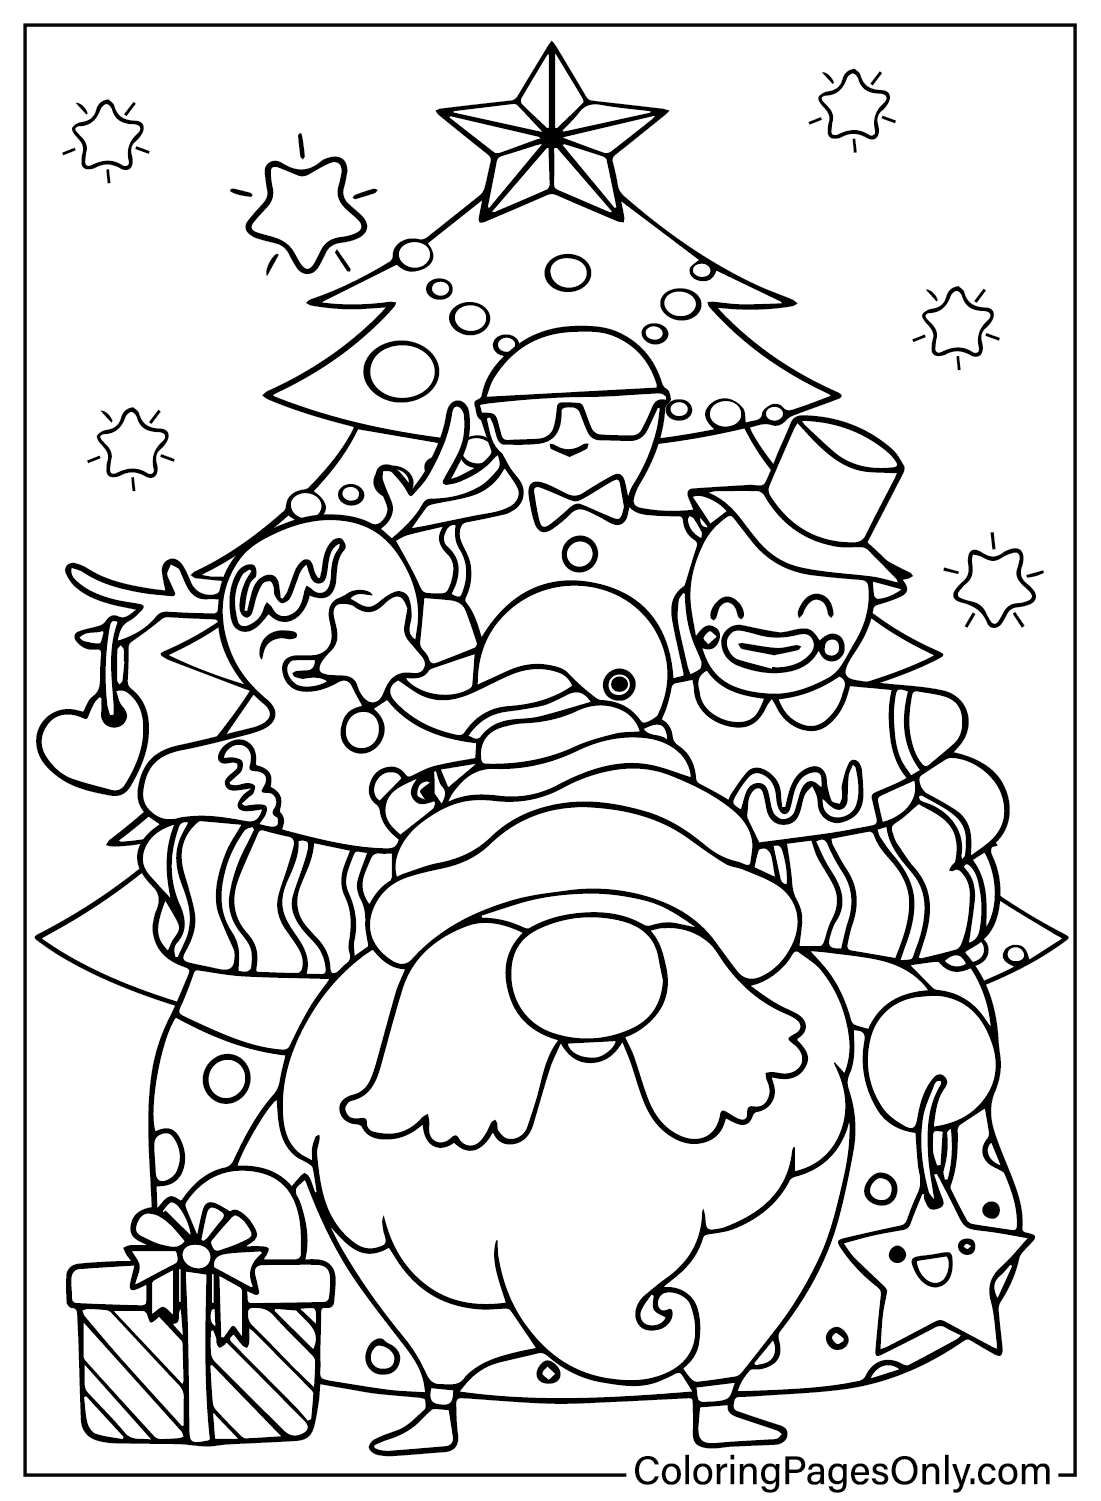 Coloring Page of Santa Claus from Santa Claus